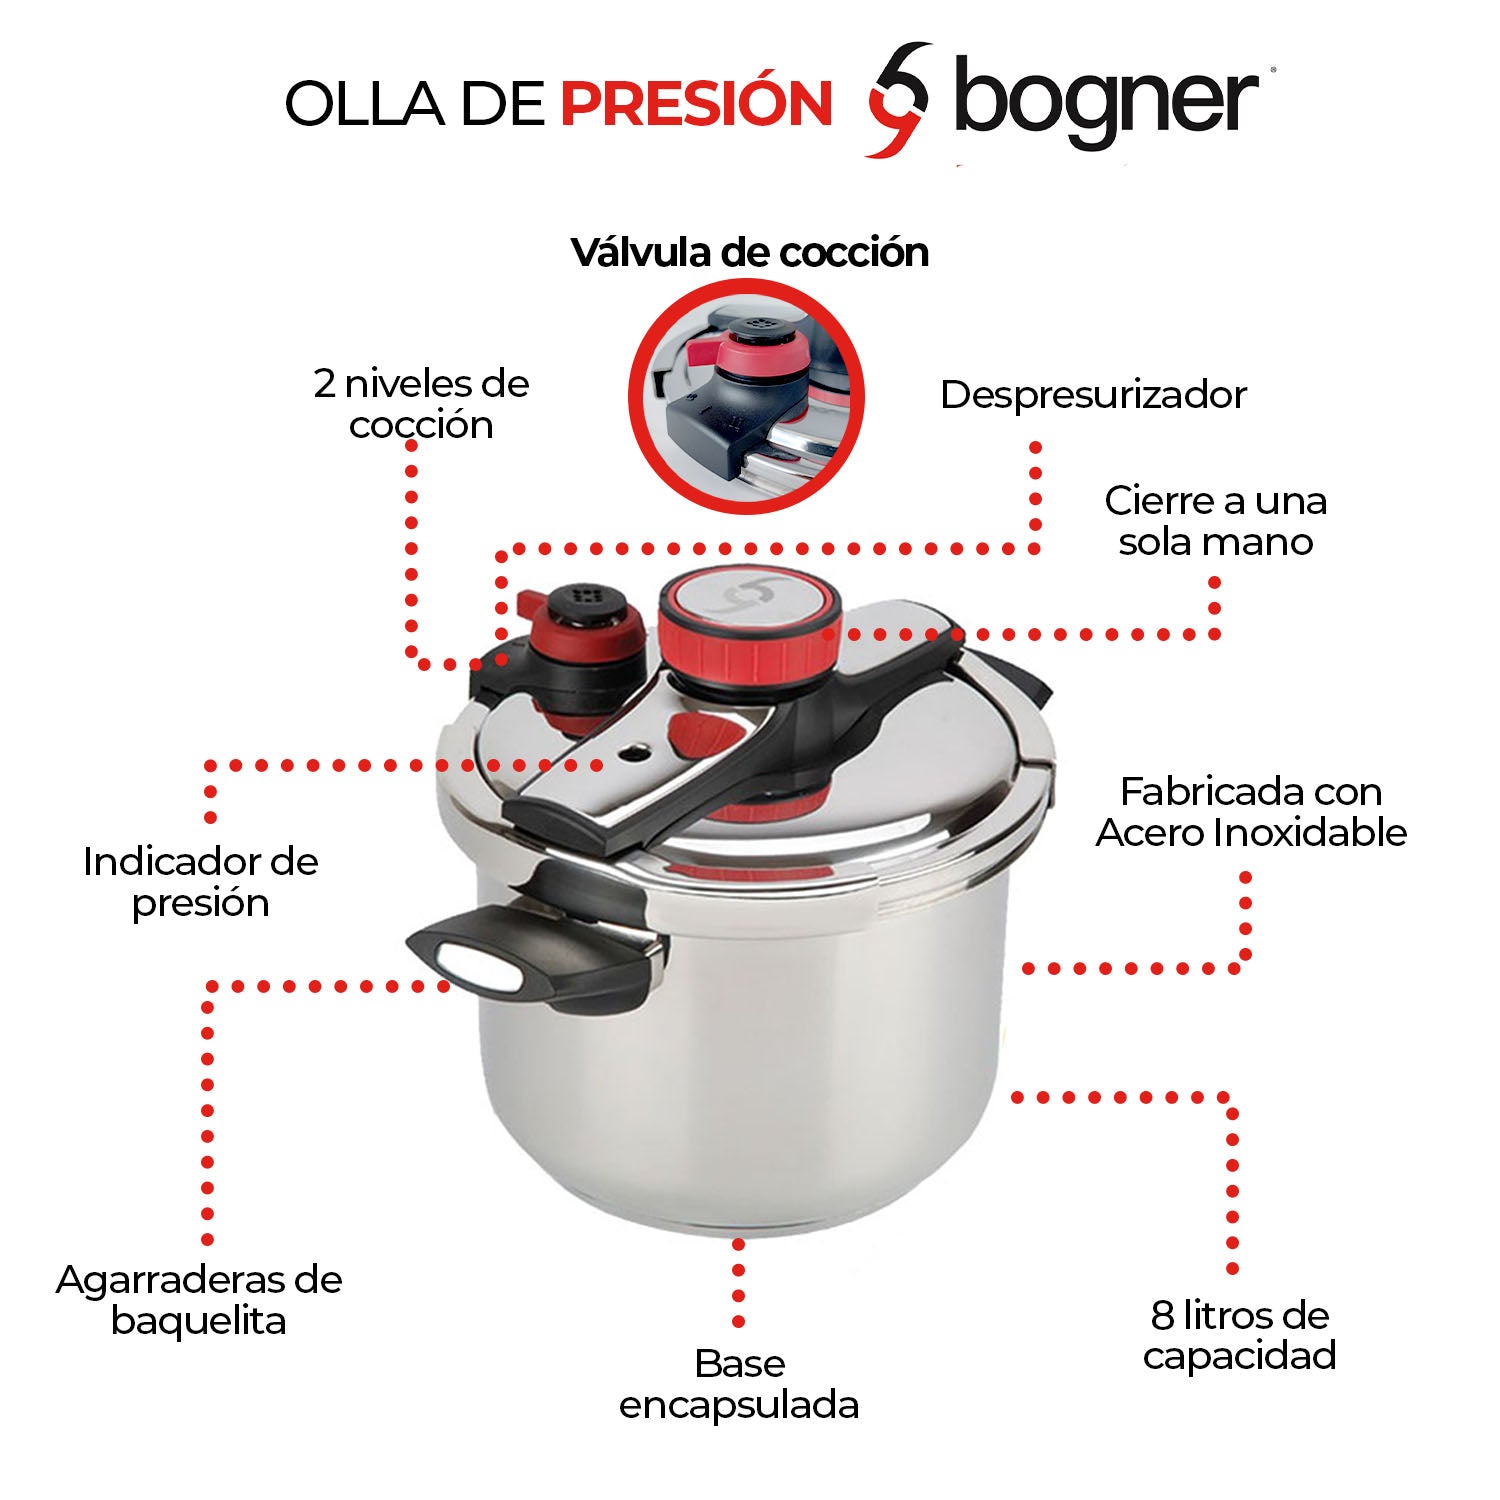 Olla de presión de acero inoxidable 8 litros Bogner – bognermex